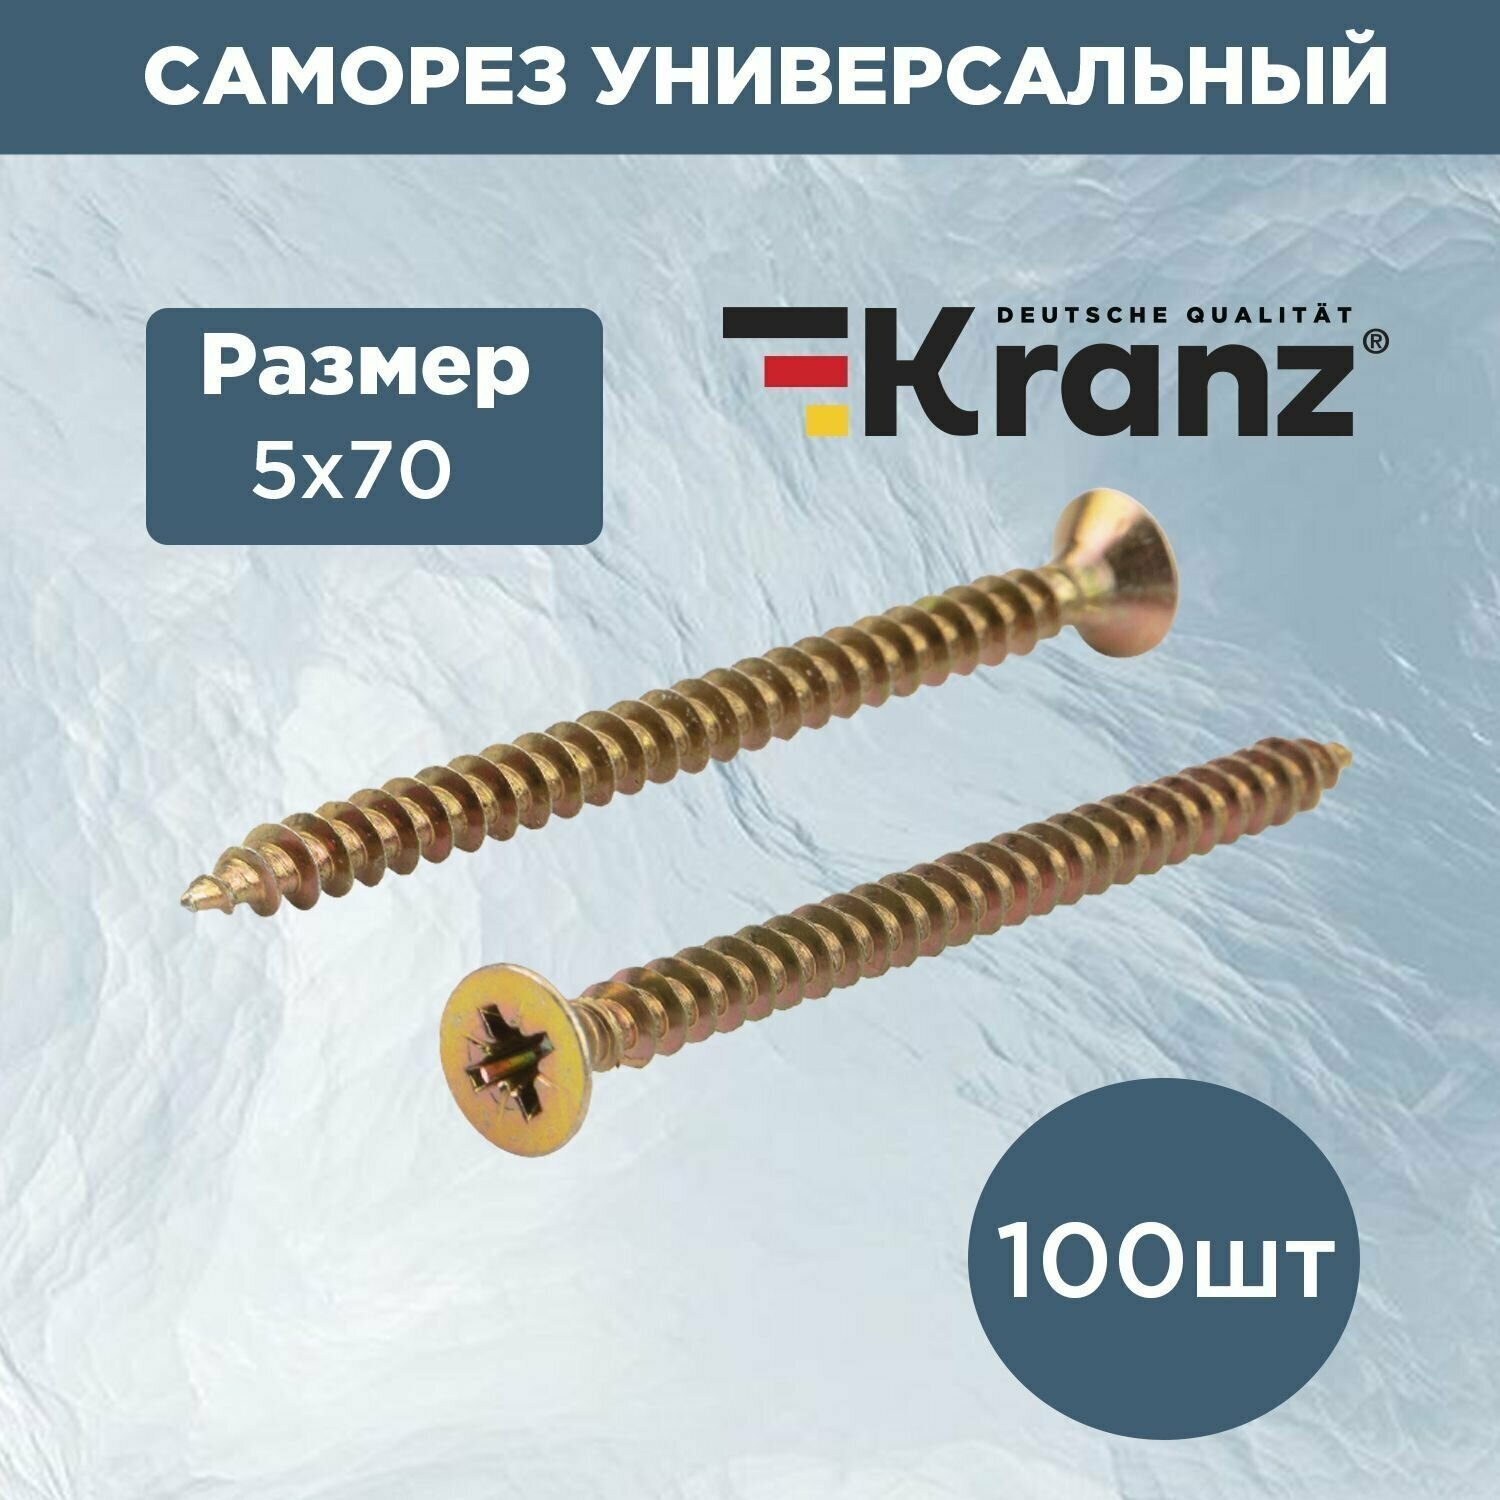 Саморез универсальный для дерева и металла KRANZ 5х70 с противокоррозионным покрытием из желтого цинка короб 100 шт.